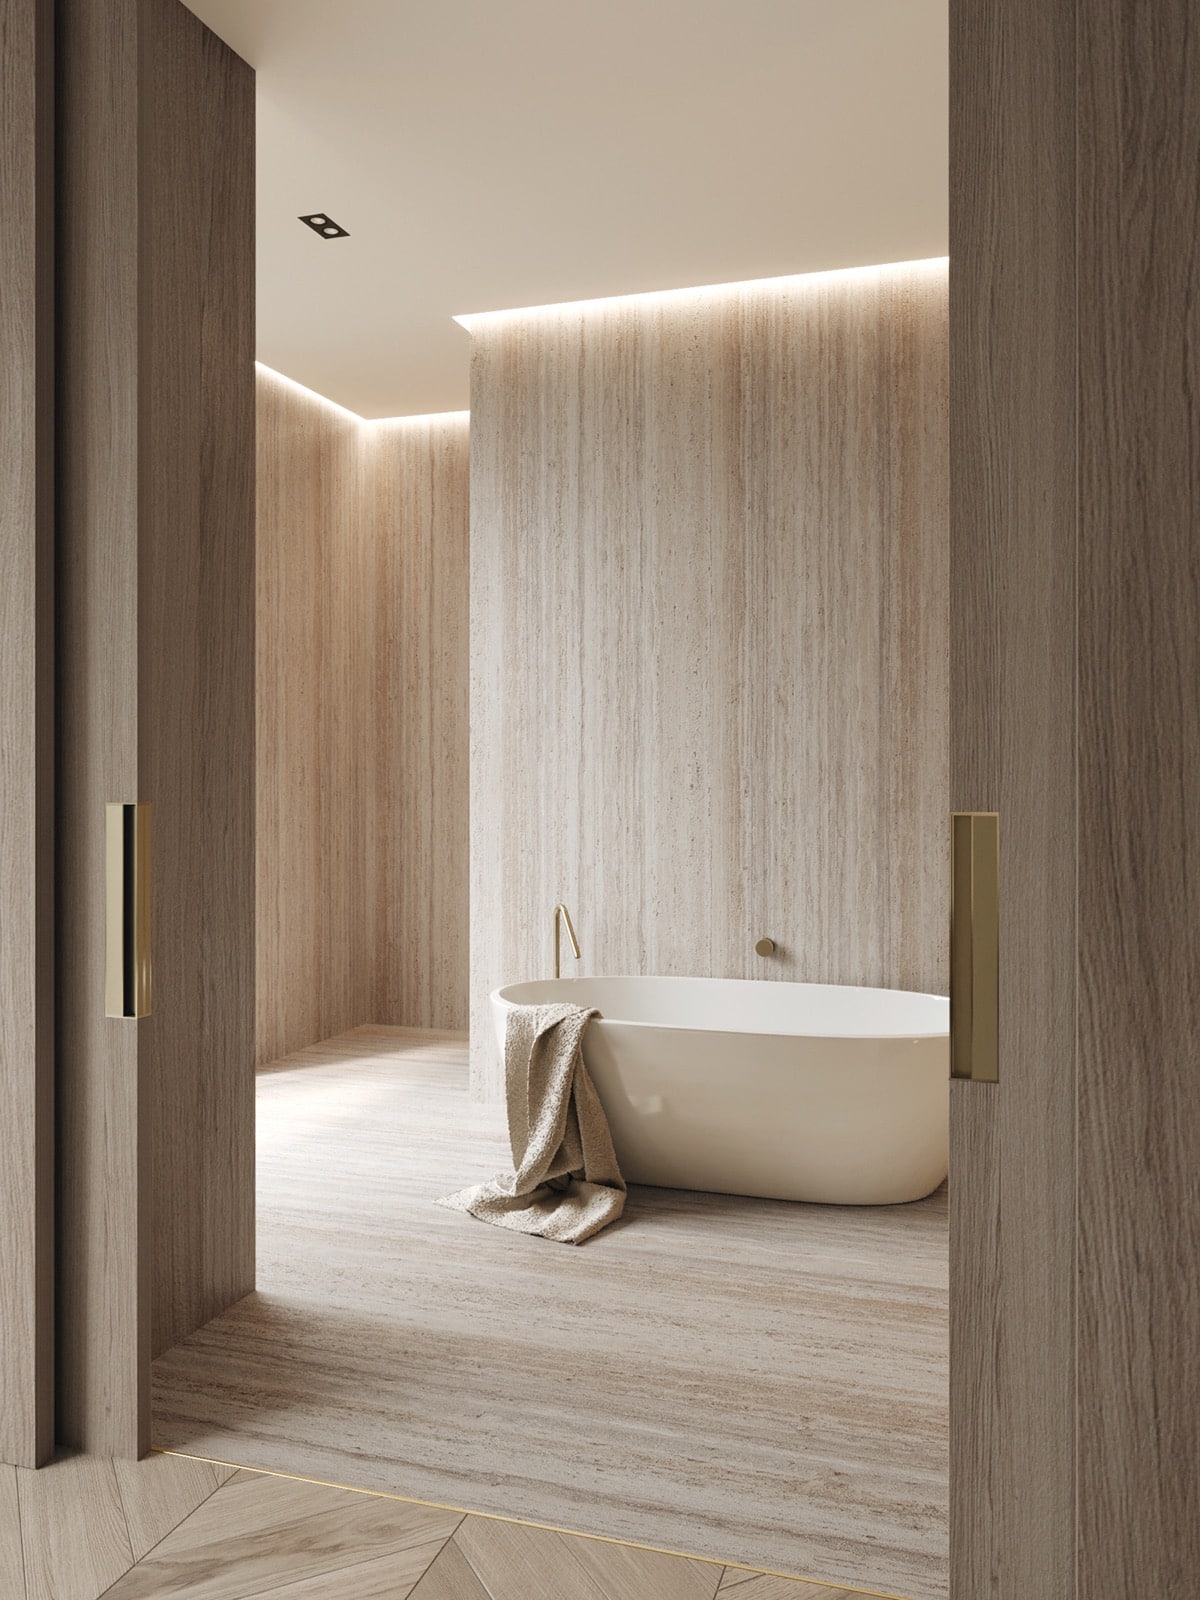 Prachtig luxe badkamerontwerp gevisualiseerd door Jasmin Kodzha. Door de hele badkamer zijn ledstrips aan de randen van het plafond geïnstalleerd, ook boven het bad, die voor een hele luxe sfeer zorgen in de badkamer.